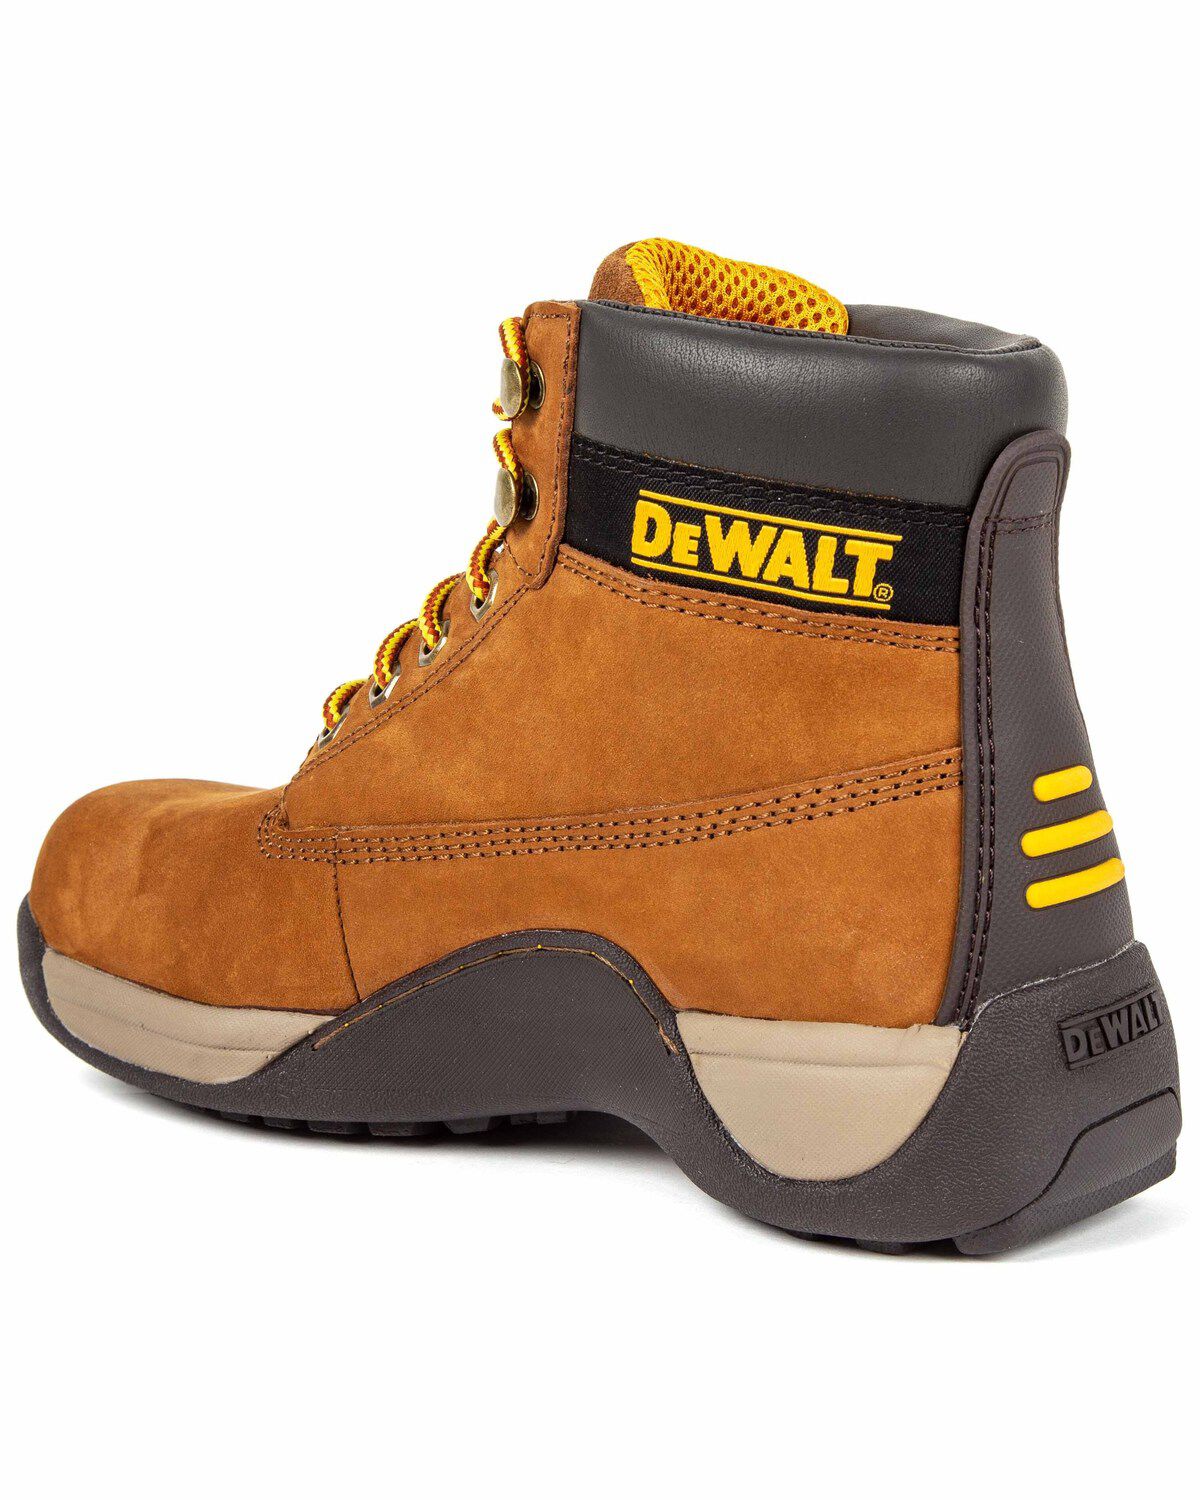 dewalt work boots